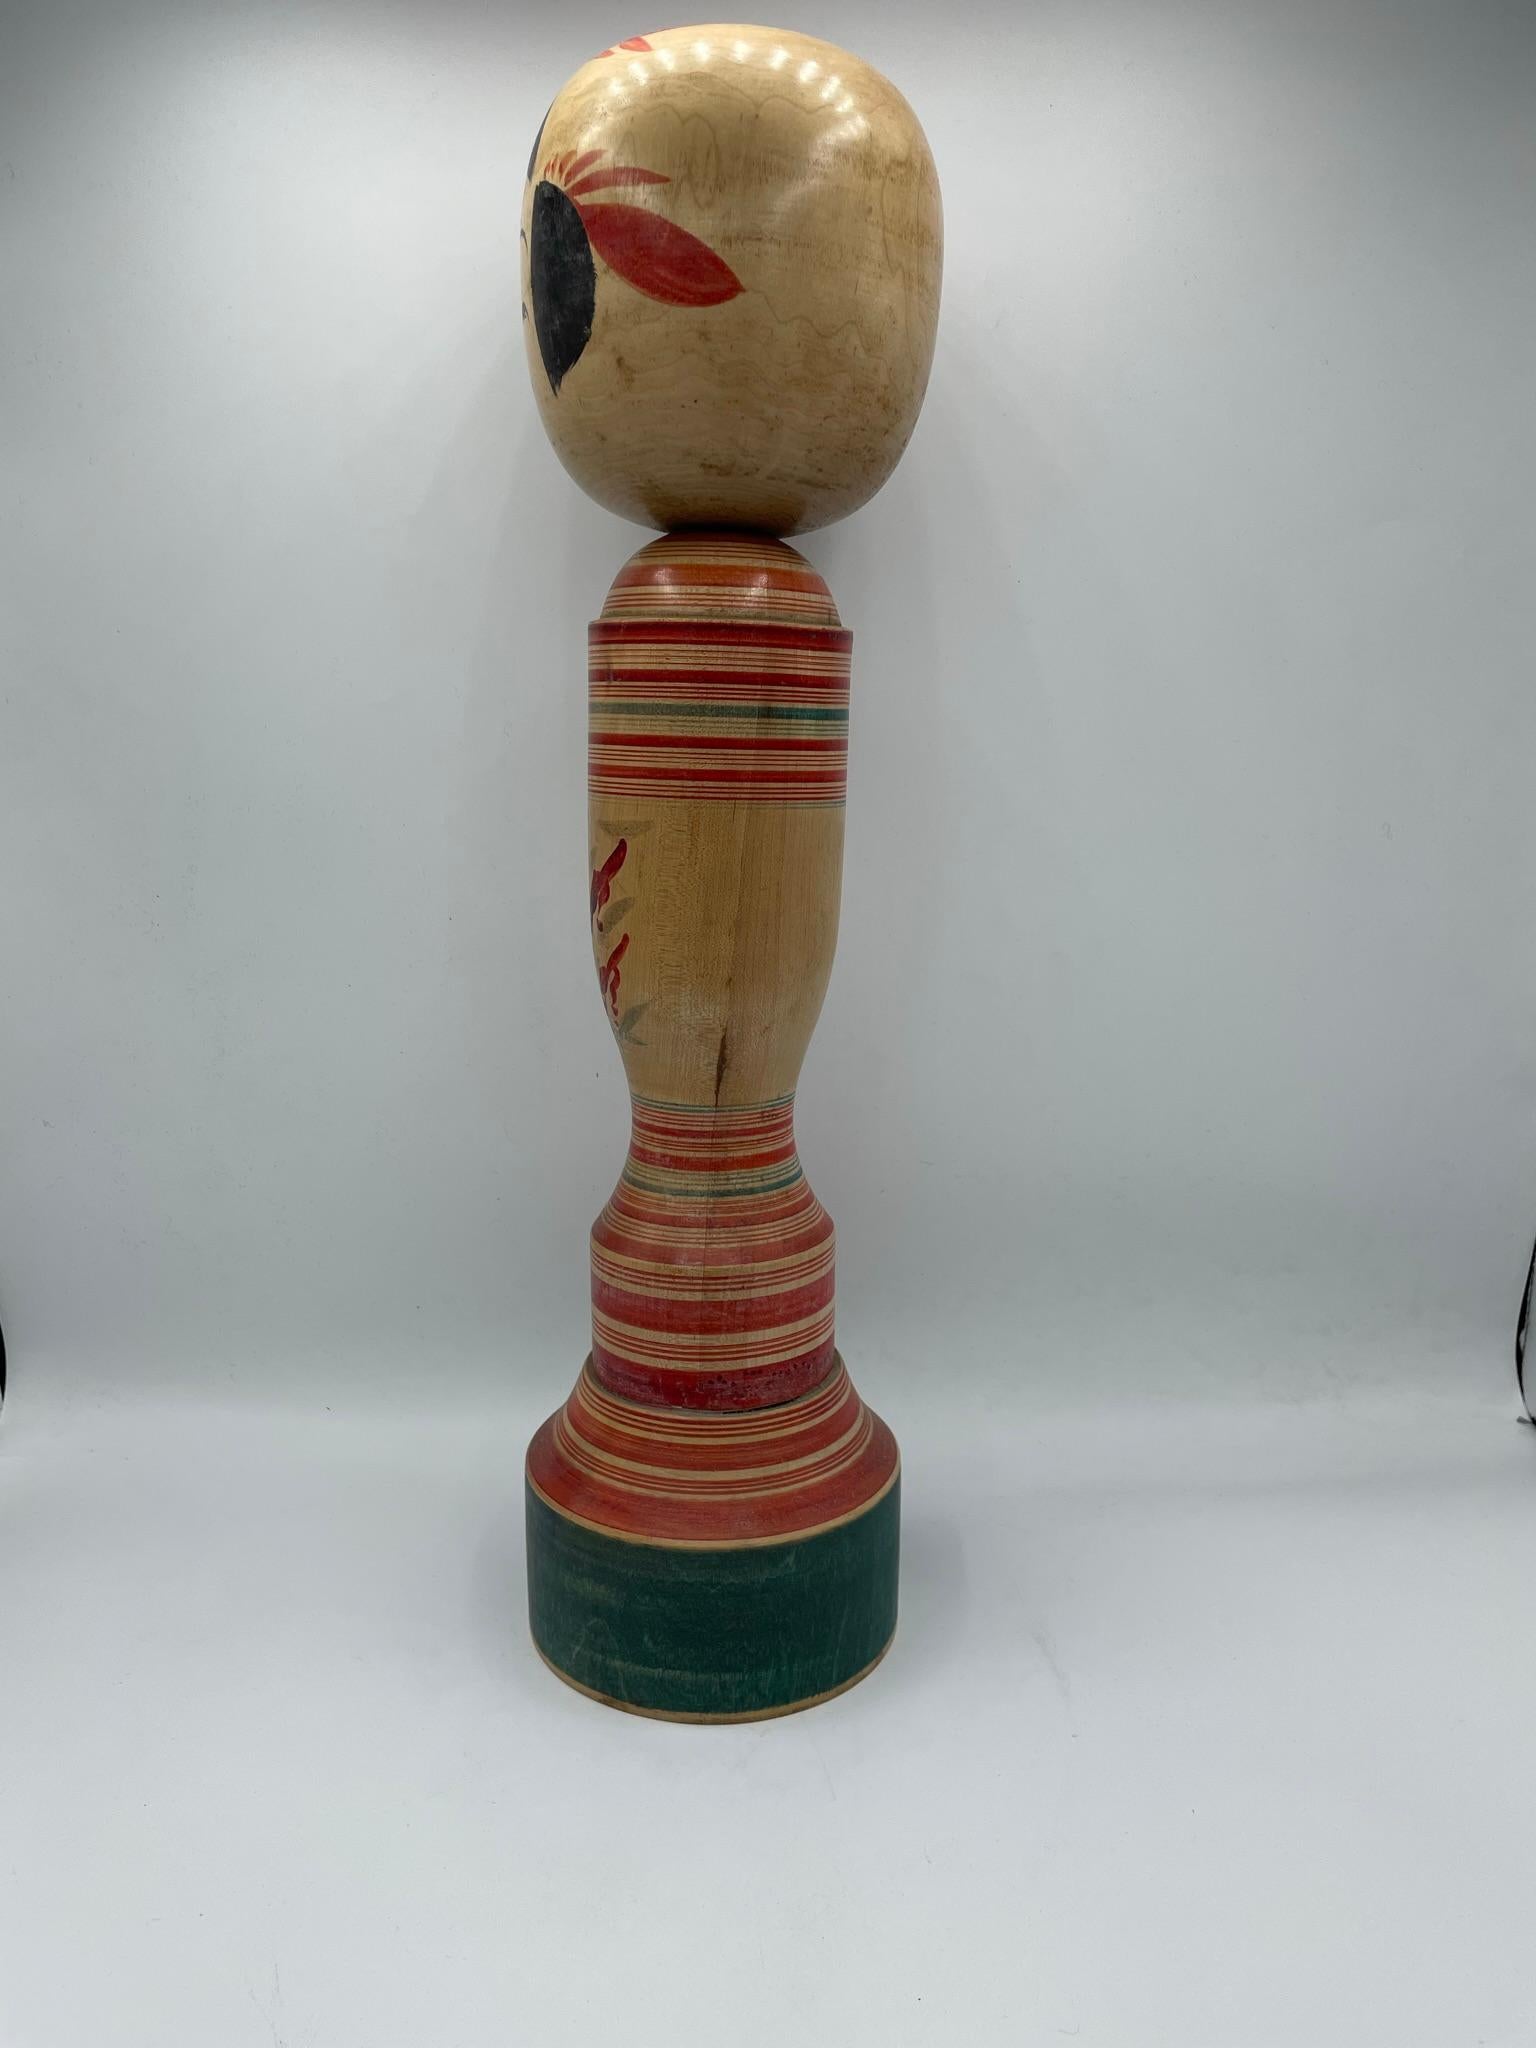 Dies ist eine japanische Kokeshi-Puppe aus Holz. Sie wurde in den 1970er Jahren in der Showa-Ära hergestellt.
Diese Holzpuppen aus der Region Tohoku (Nordjapan) bestehen aus einem runden oder zylindrischen Kopf und einem zylindrischen Körper, ohne